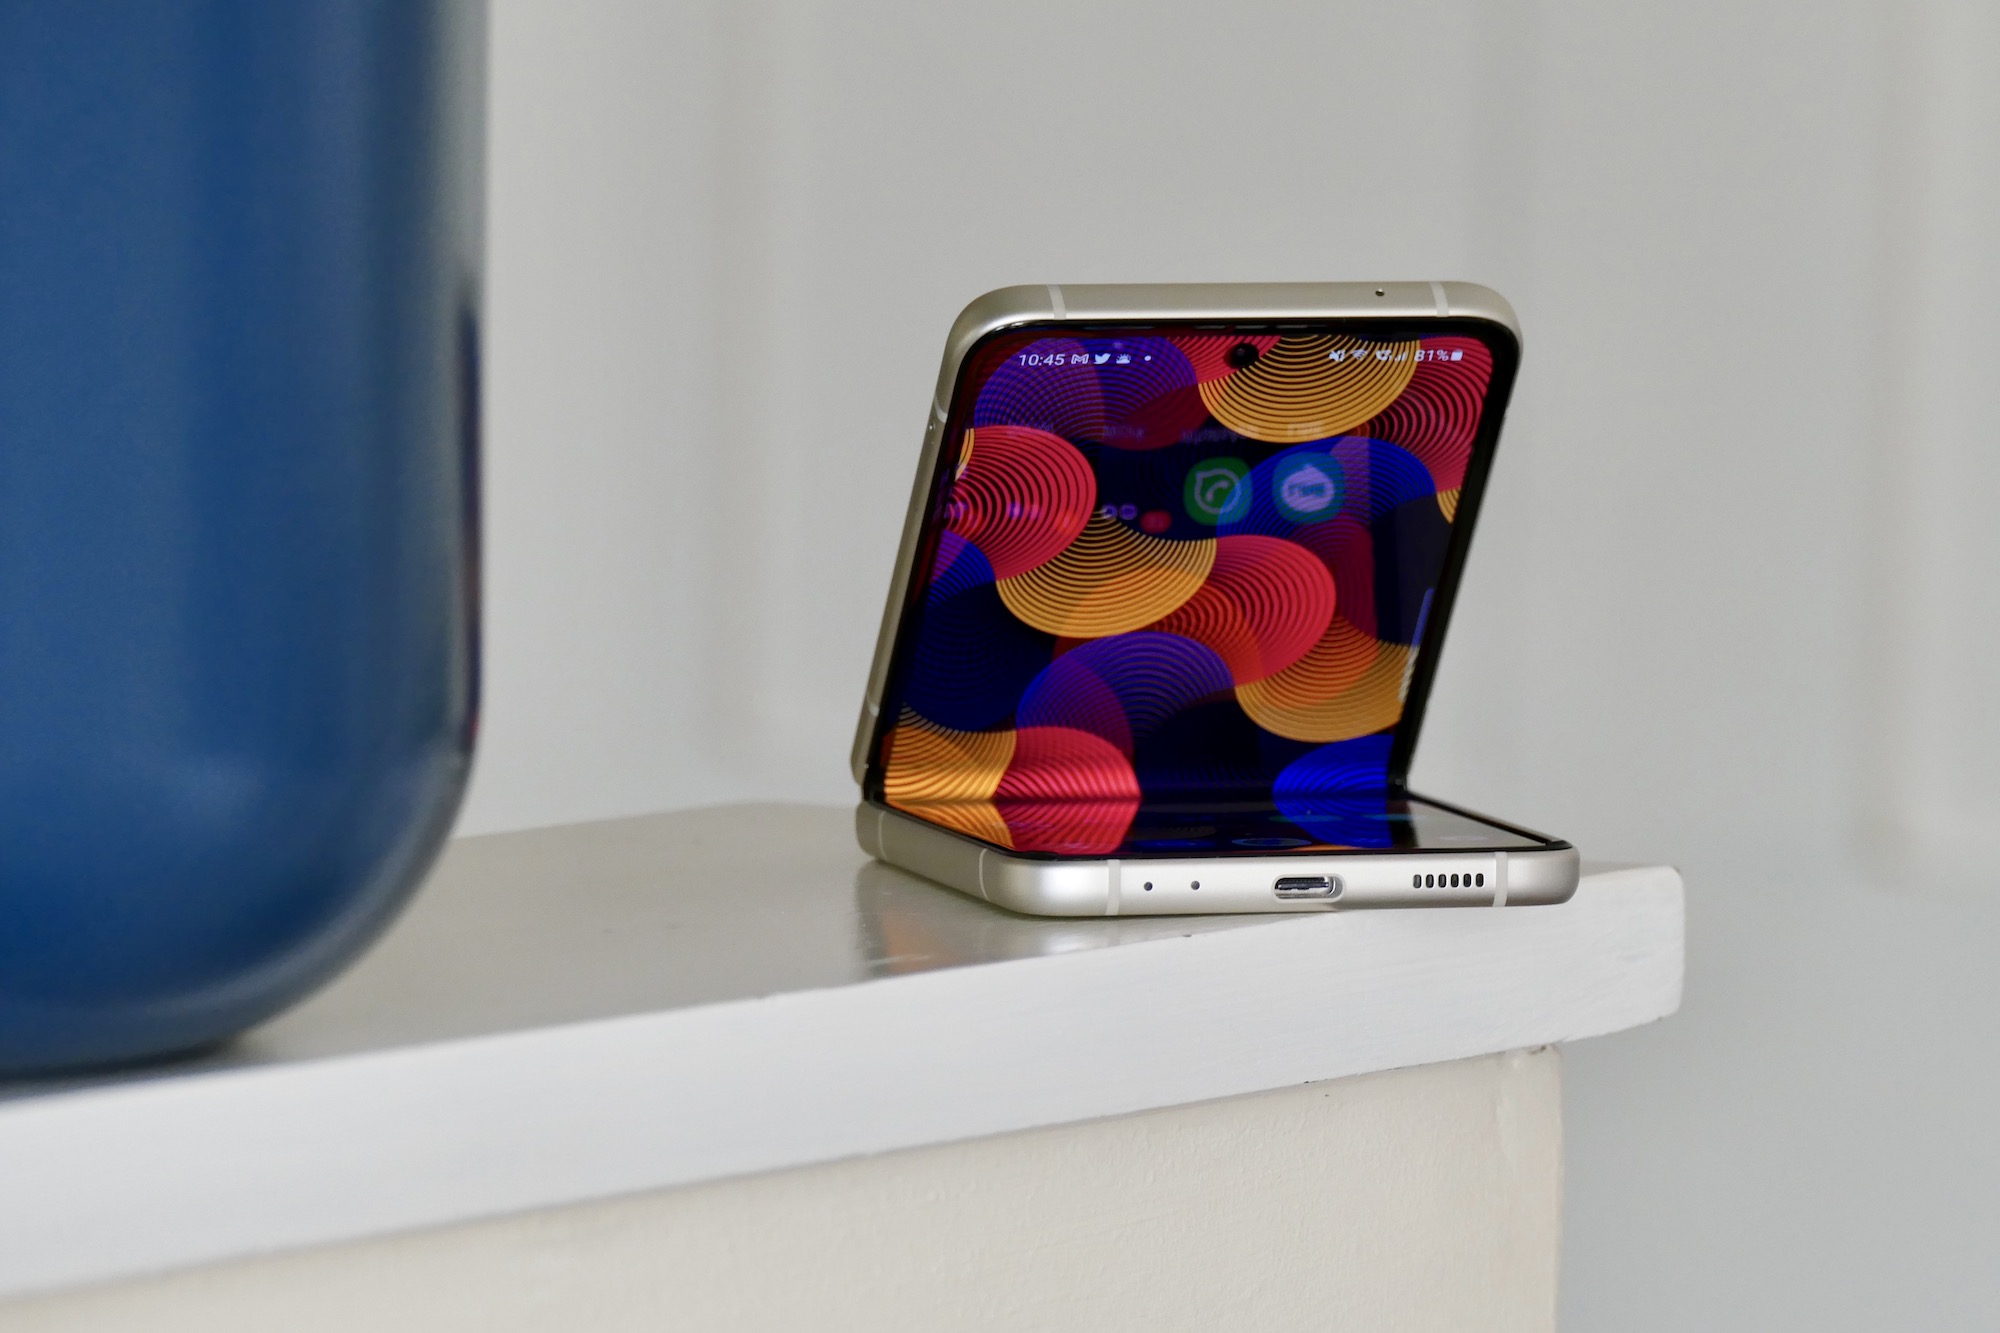 Buy Samsung Galaxy Z Flip 3 5G, Price & Deals